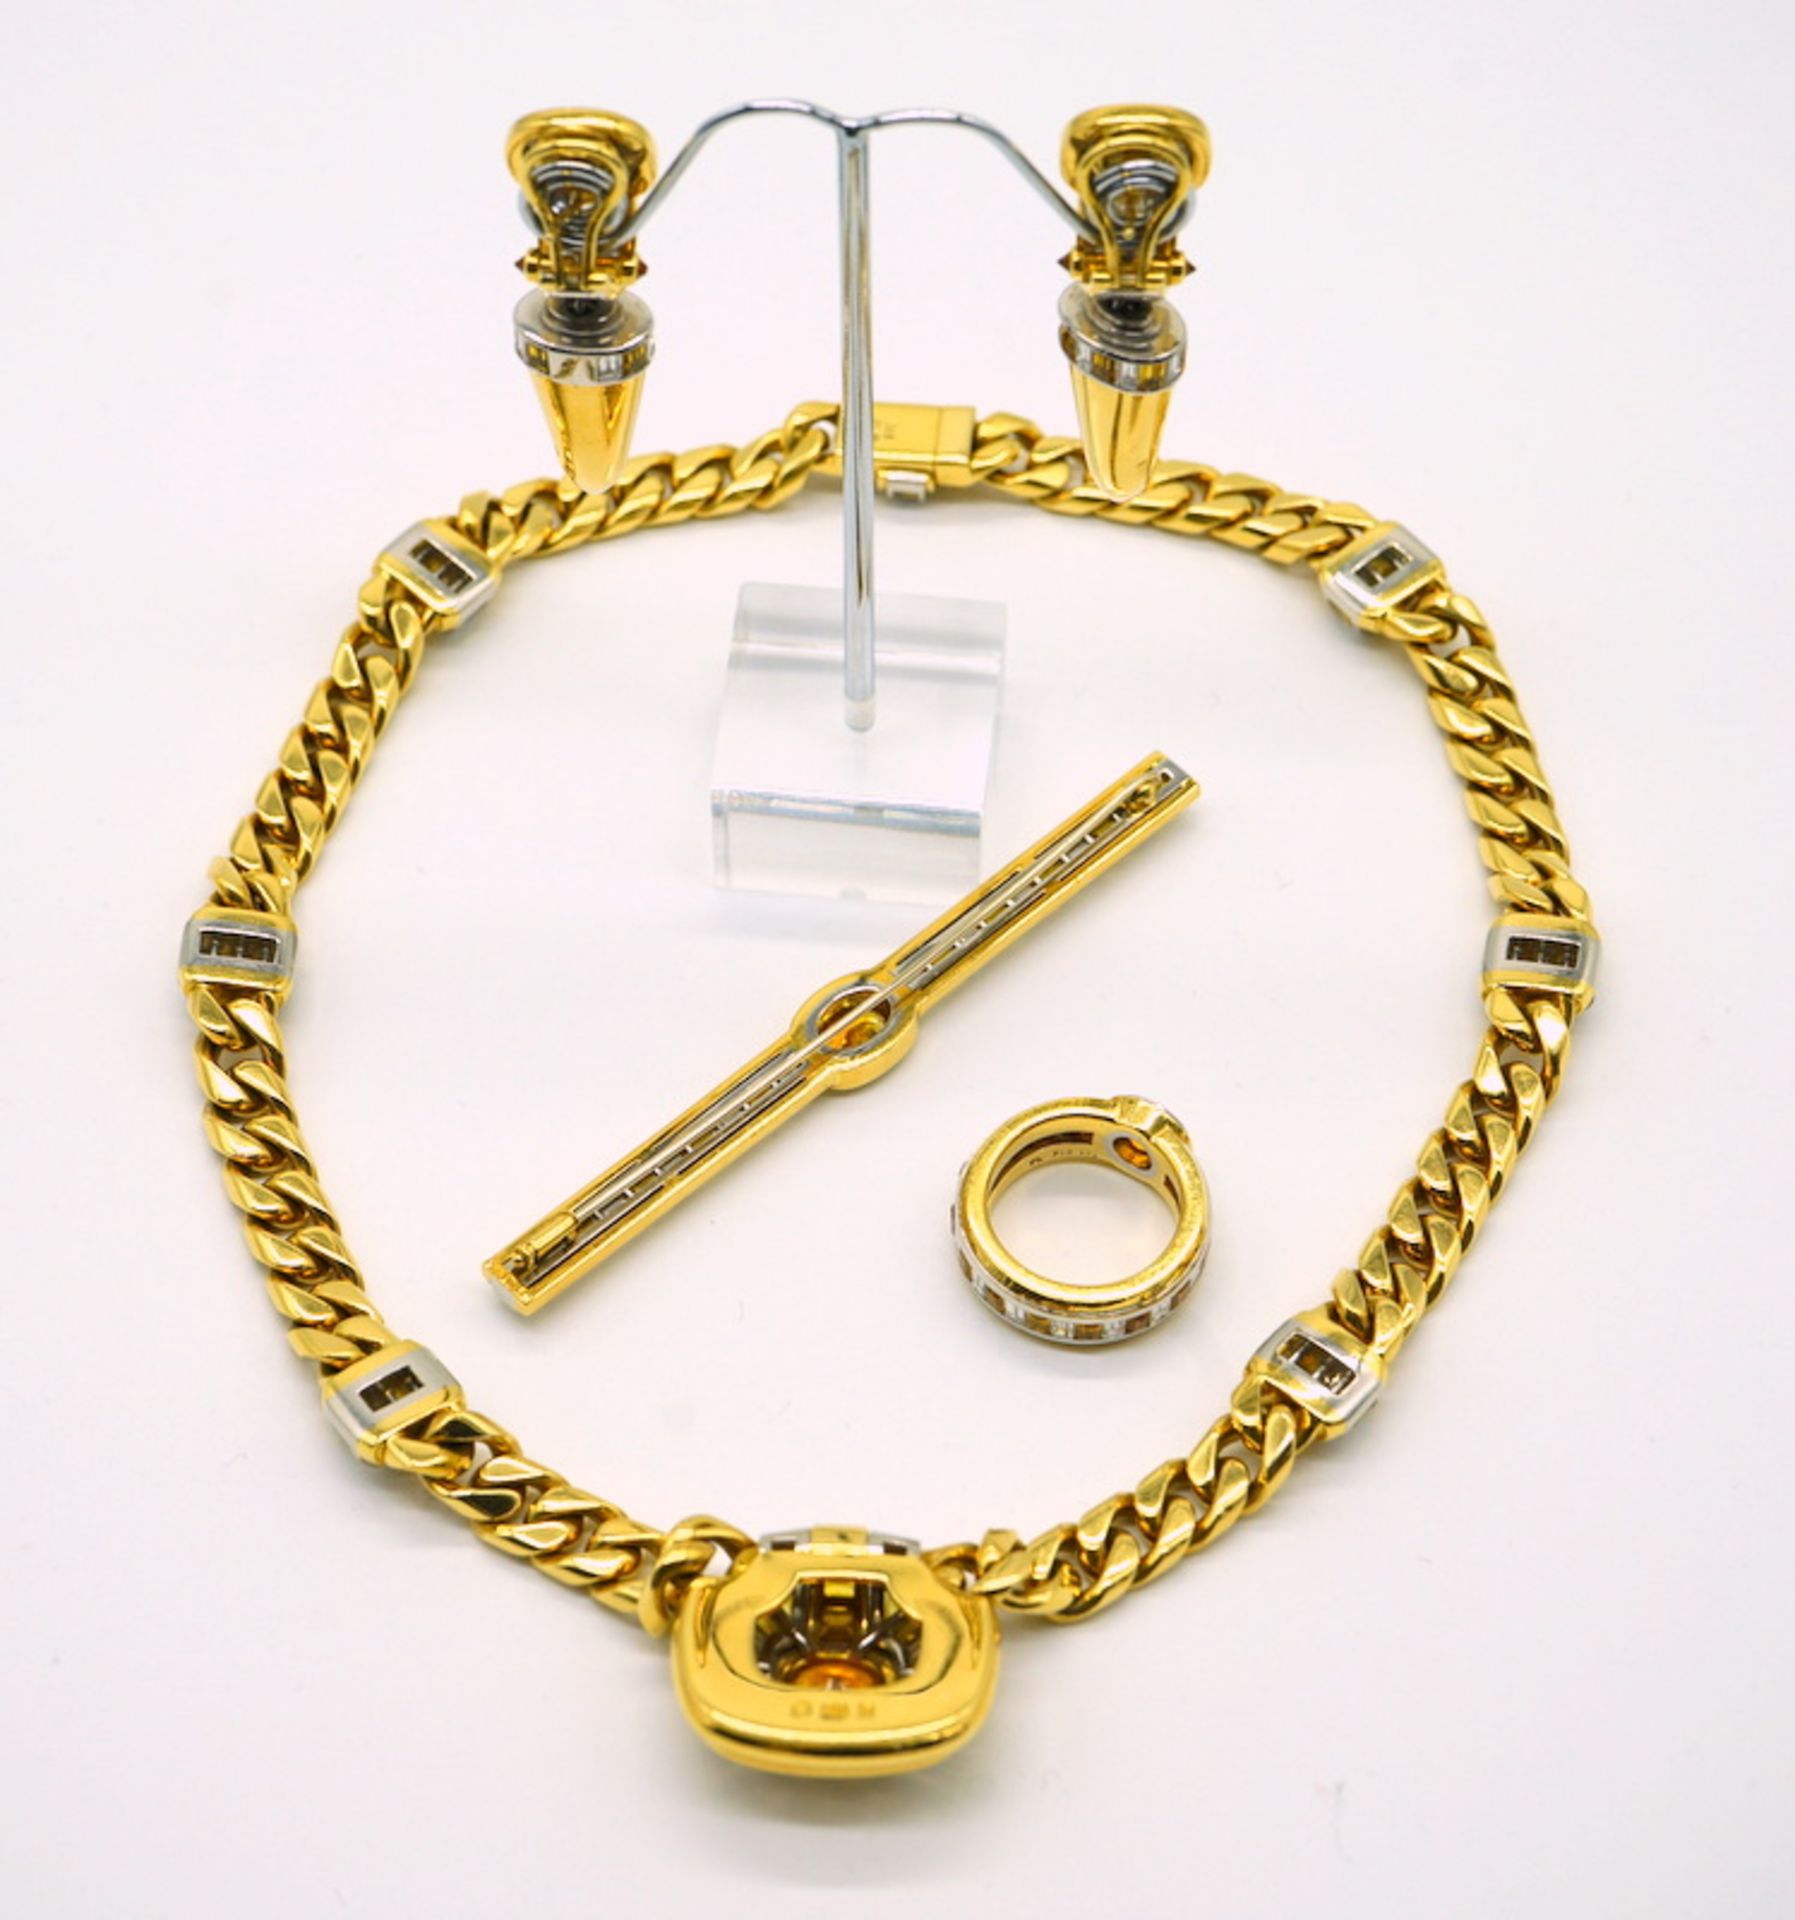 Parure mit Diamanten und gelben Saphiren, 750 GG, Juweliersanfertigung - Image 5 of 10